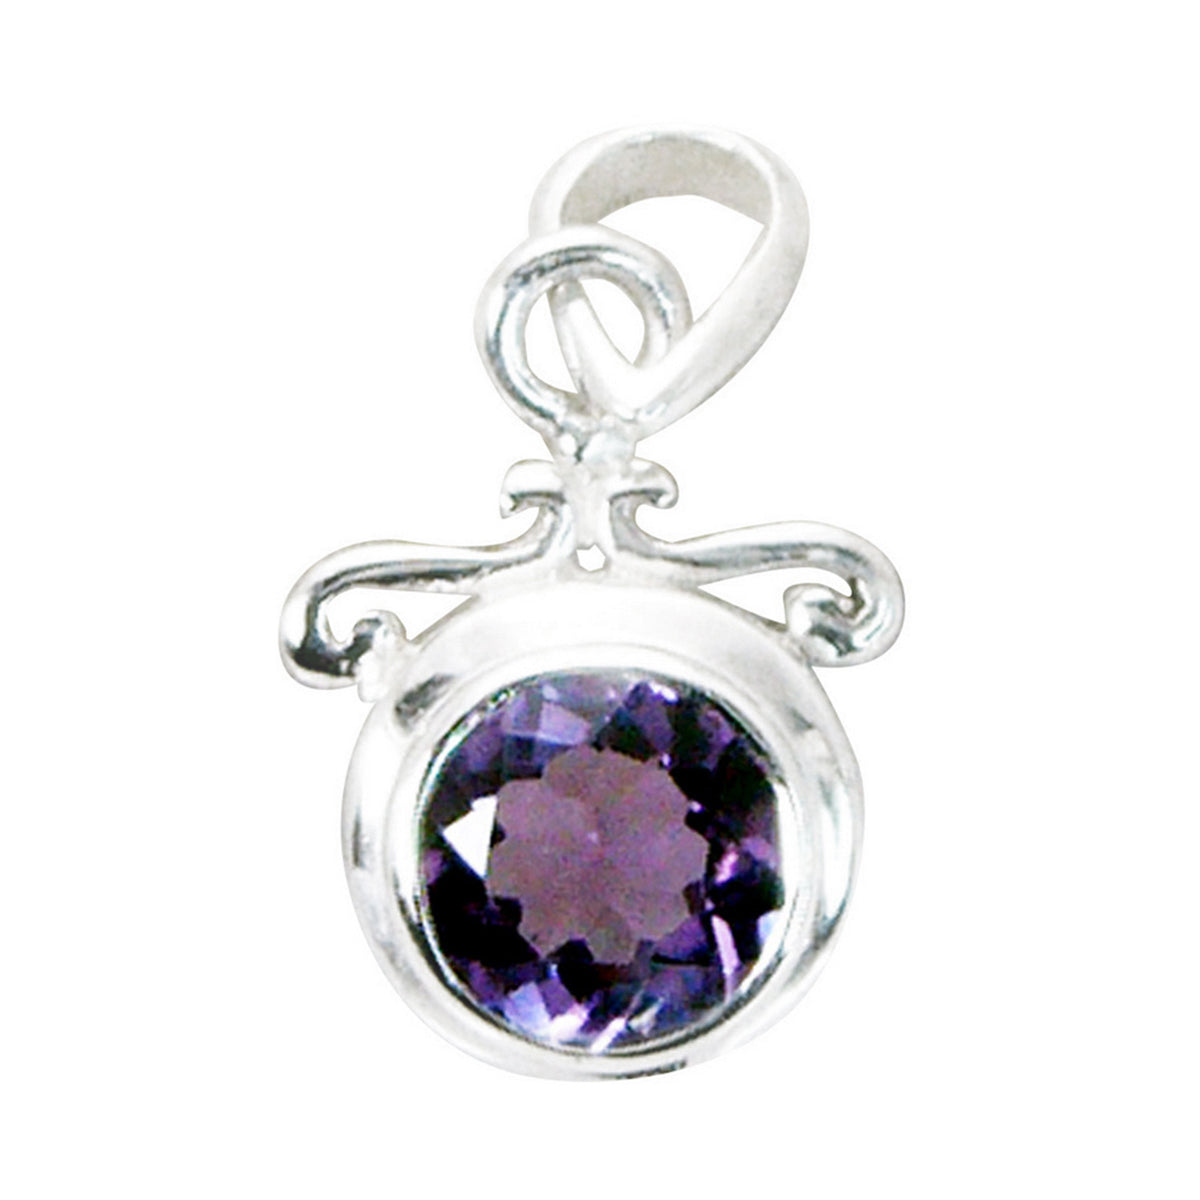 Preciosa piedra preciosa riyo, amatista púrpura facetada redonda, colgante de plata de ley 953, regalo para cumpleaños